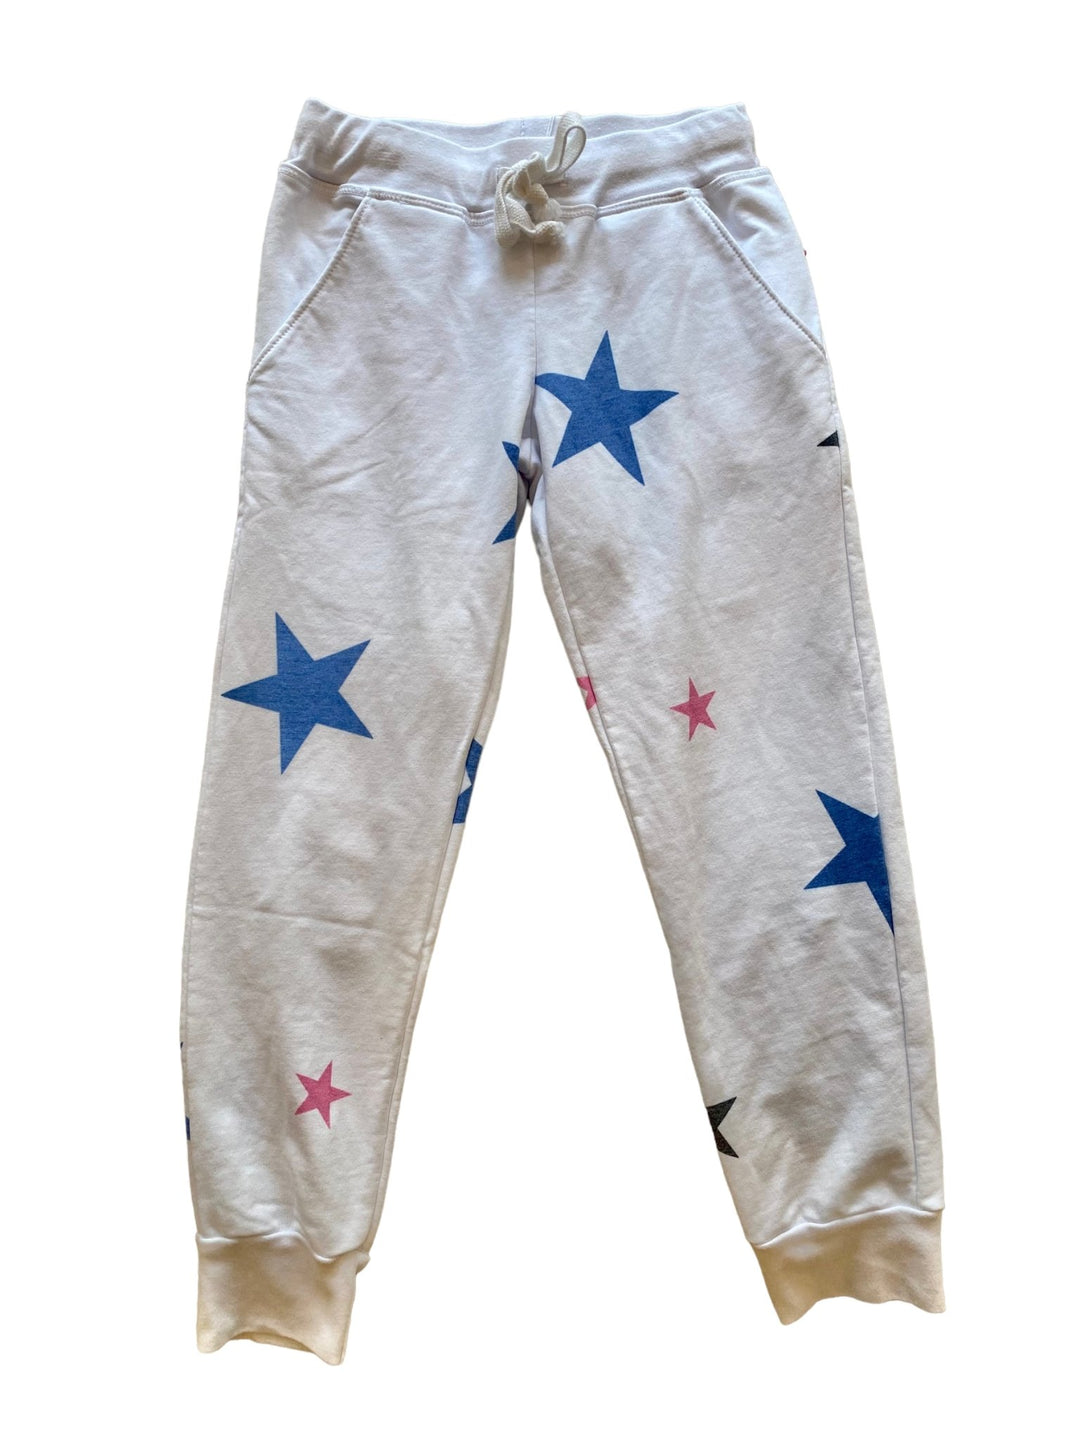 White w/ Stars Sweatpants - jernijacks